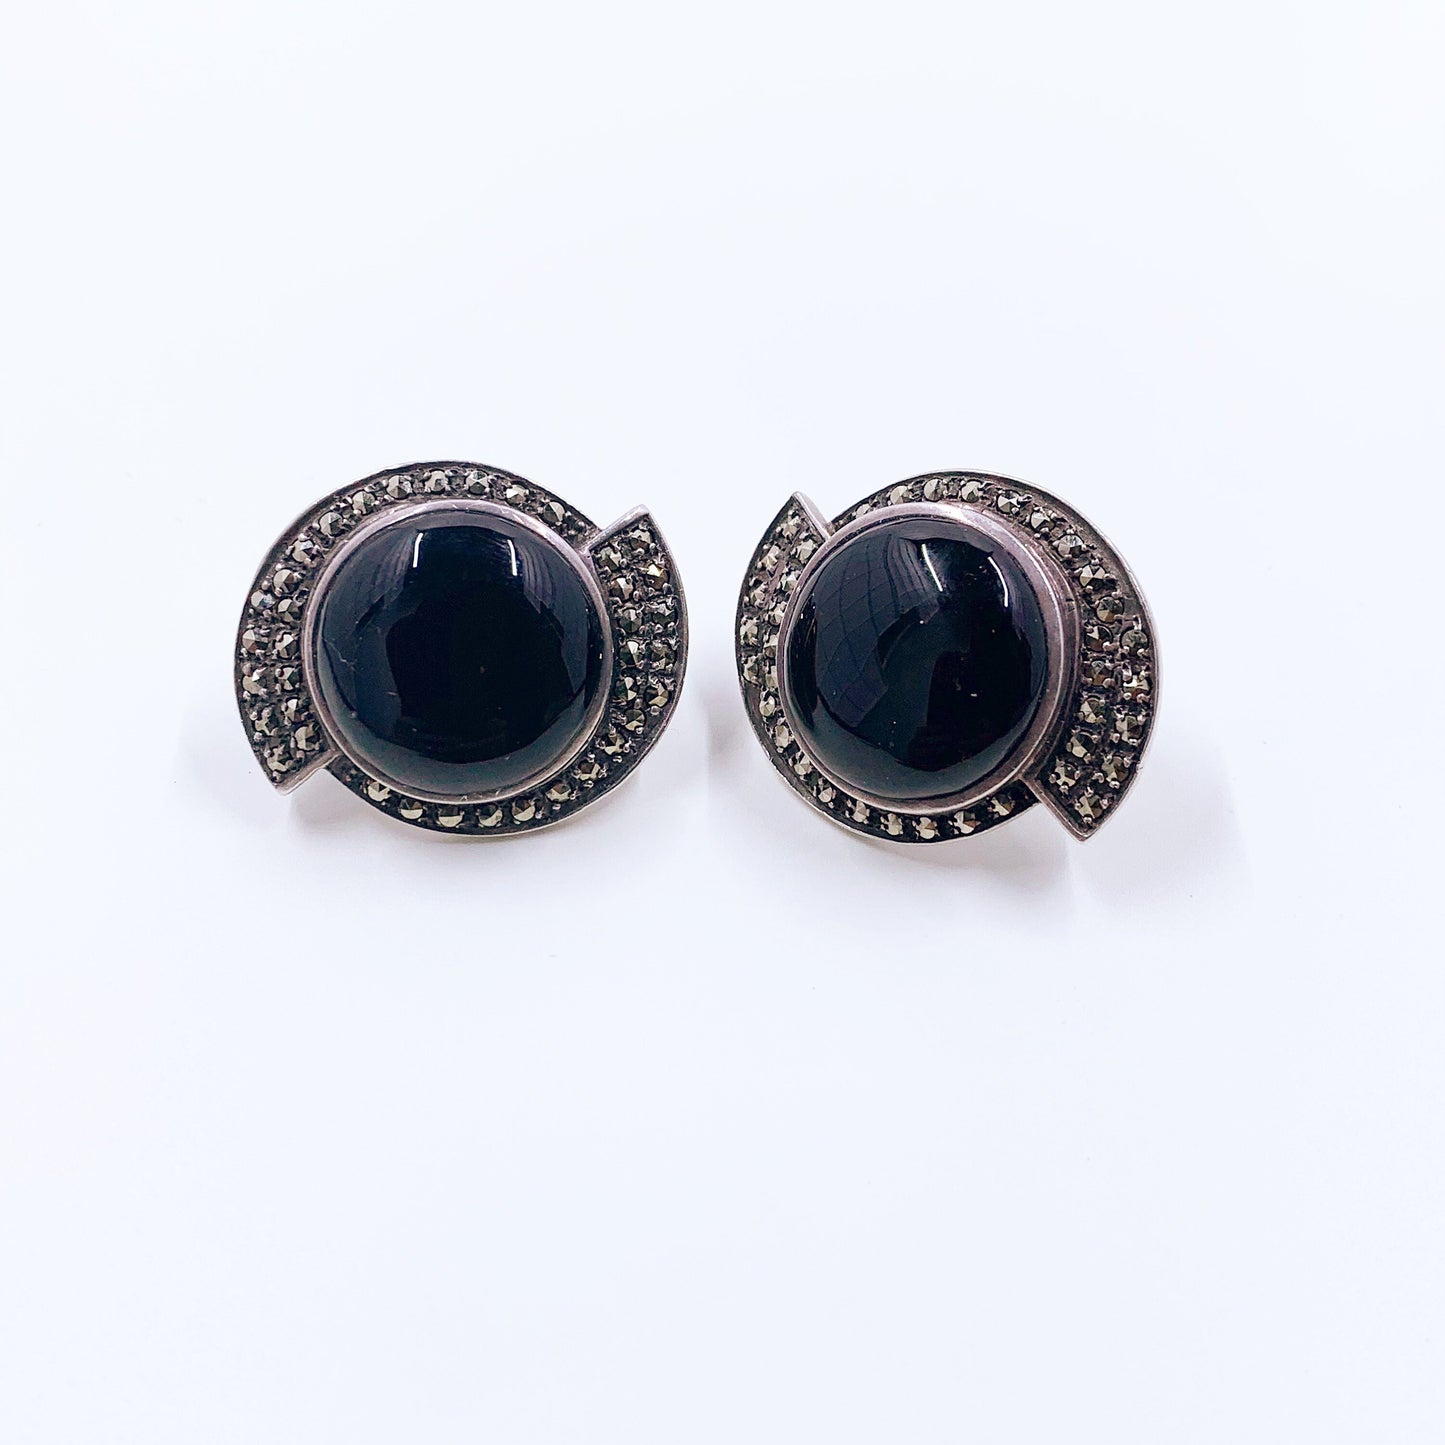 Vintage Art Deco Style Onyx and Marcasite Earrings | Sterling Heirloom 73 Earrings | Vintage Creations